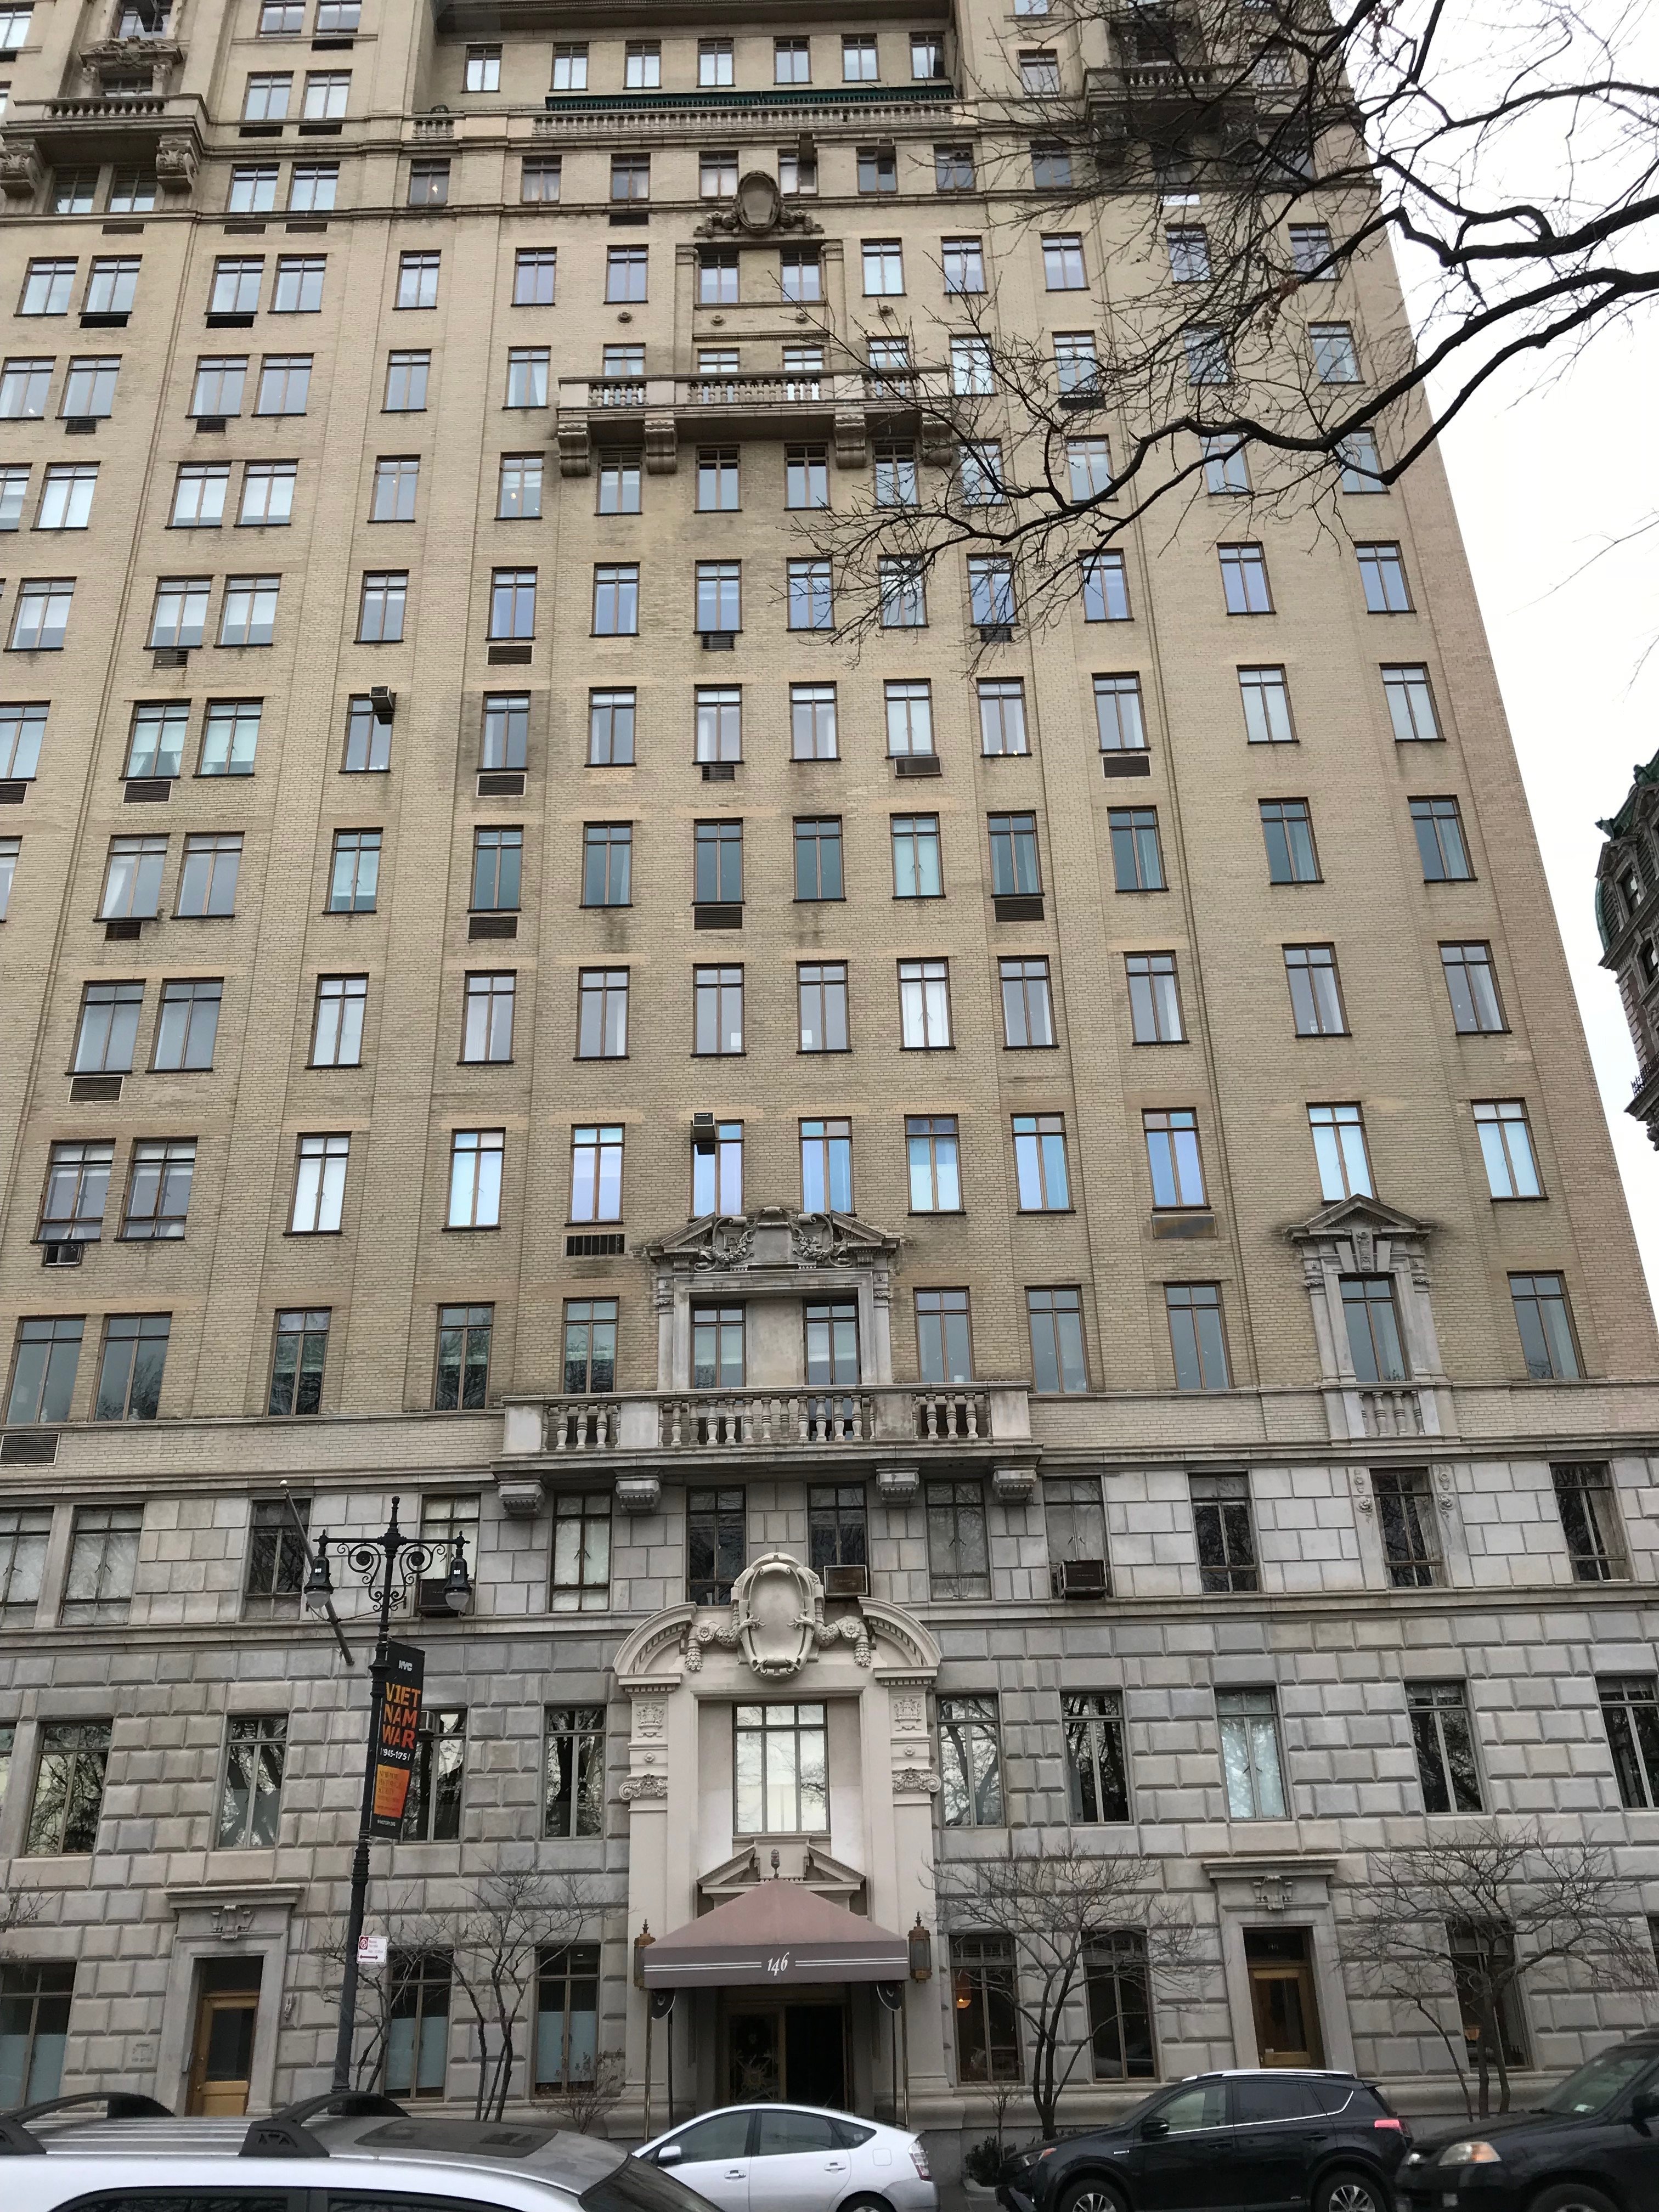 A building where Ilene Sackler Lefcourt has an apartment overlooking Central Park. (DCNF/Ethan Barton)